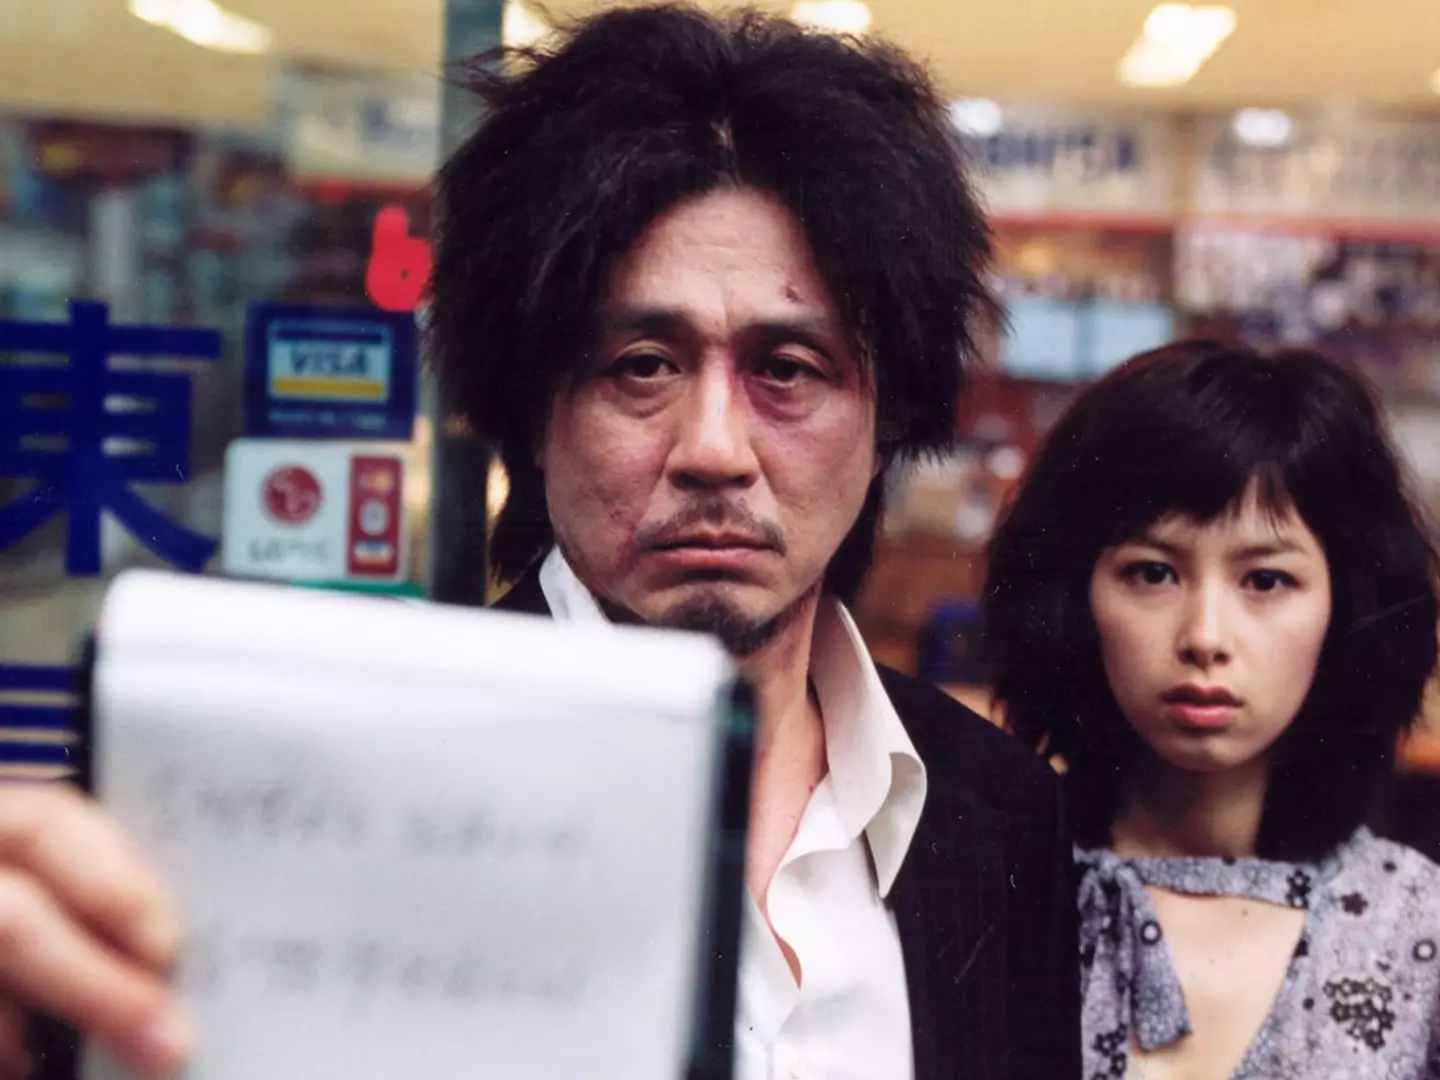 |Estreias| Clássico moderno de Park Chan-wook, 'Oldboy' retorna aos cinemas em cópia remasterizada